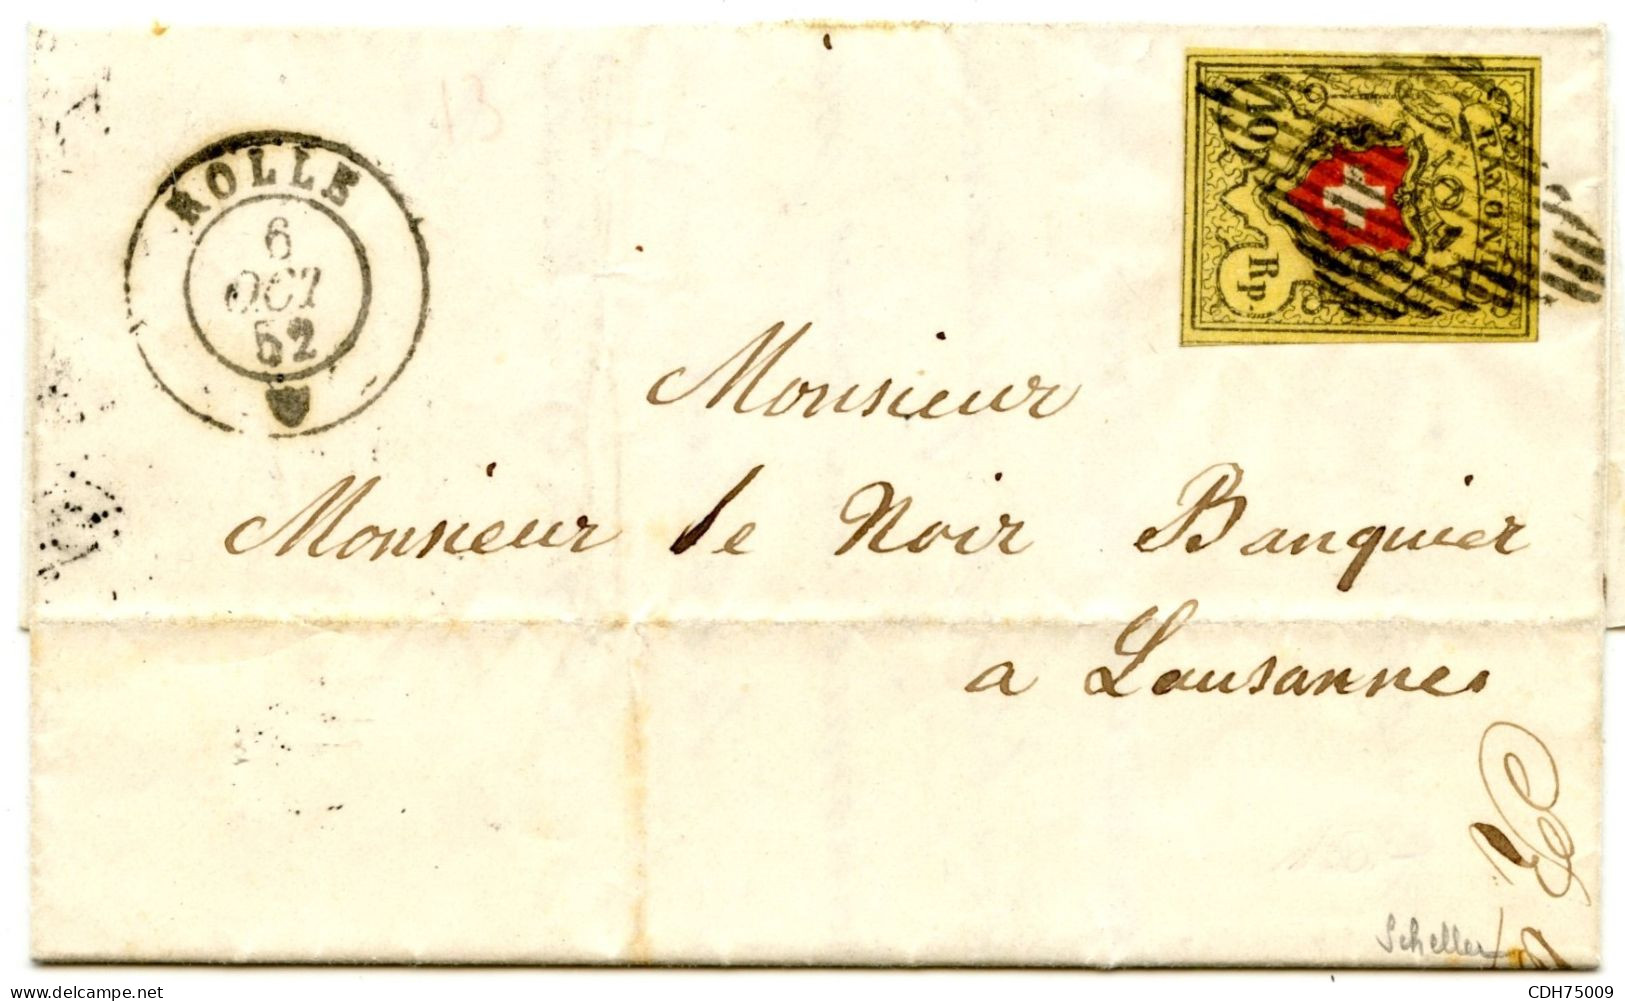 SUISSE - SBK 16II  10 RAPPEN CROIX NON ENCADREE SUR LETTRE DE ROLLE POUR LAUSANNE, 1852  - SIGNEE SCHELLER - 1843-1852 Poste Federali E Cantonali